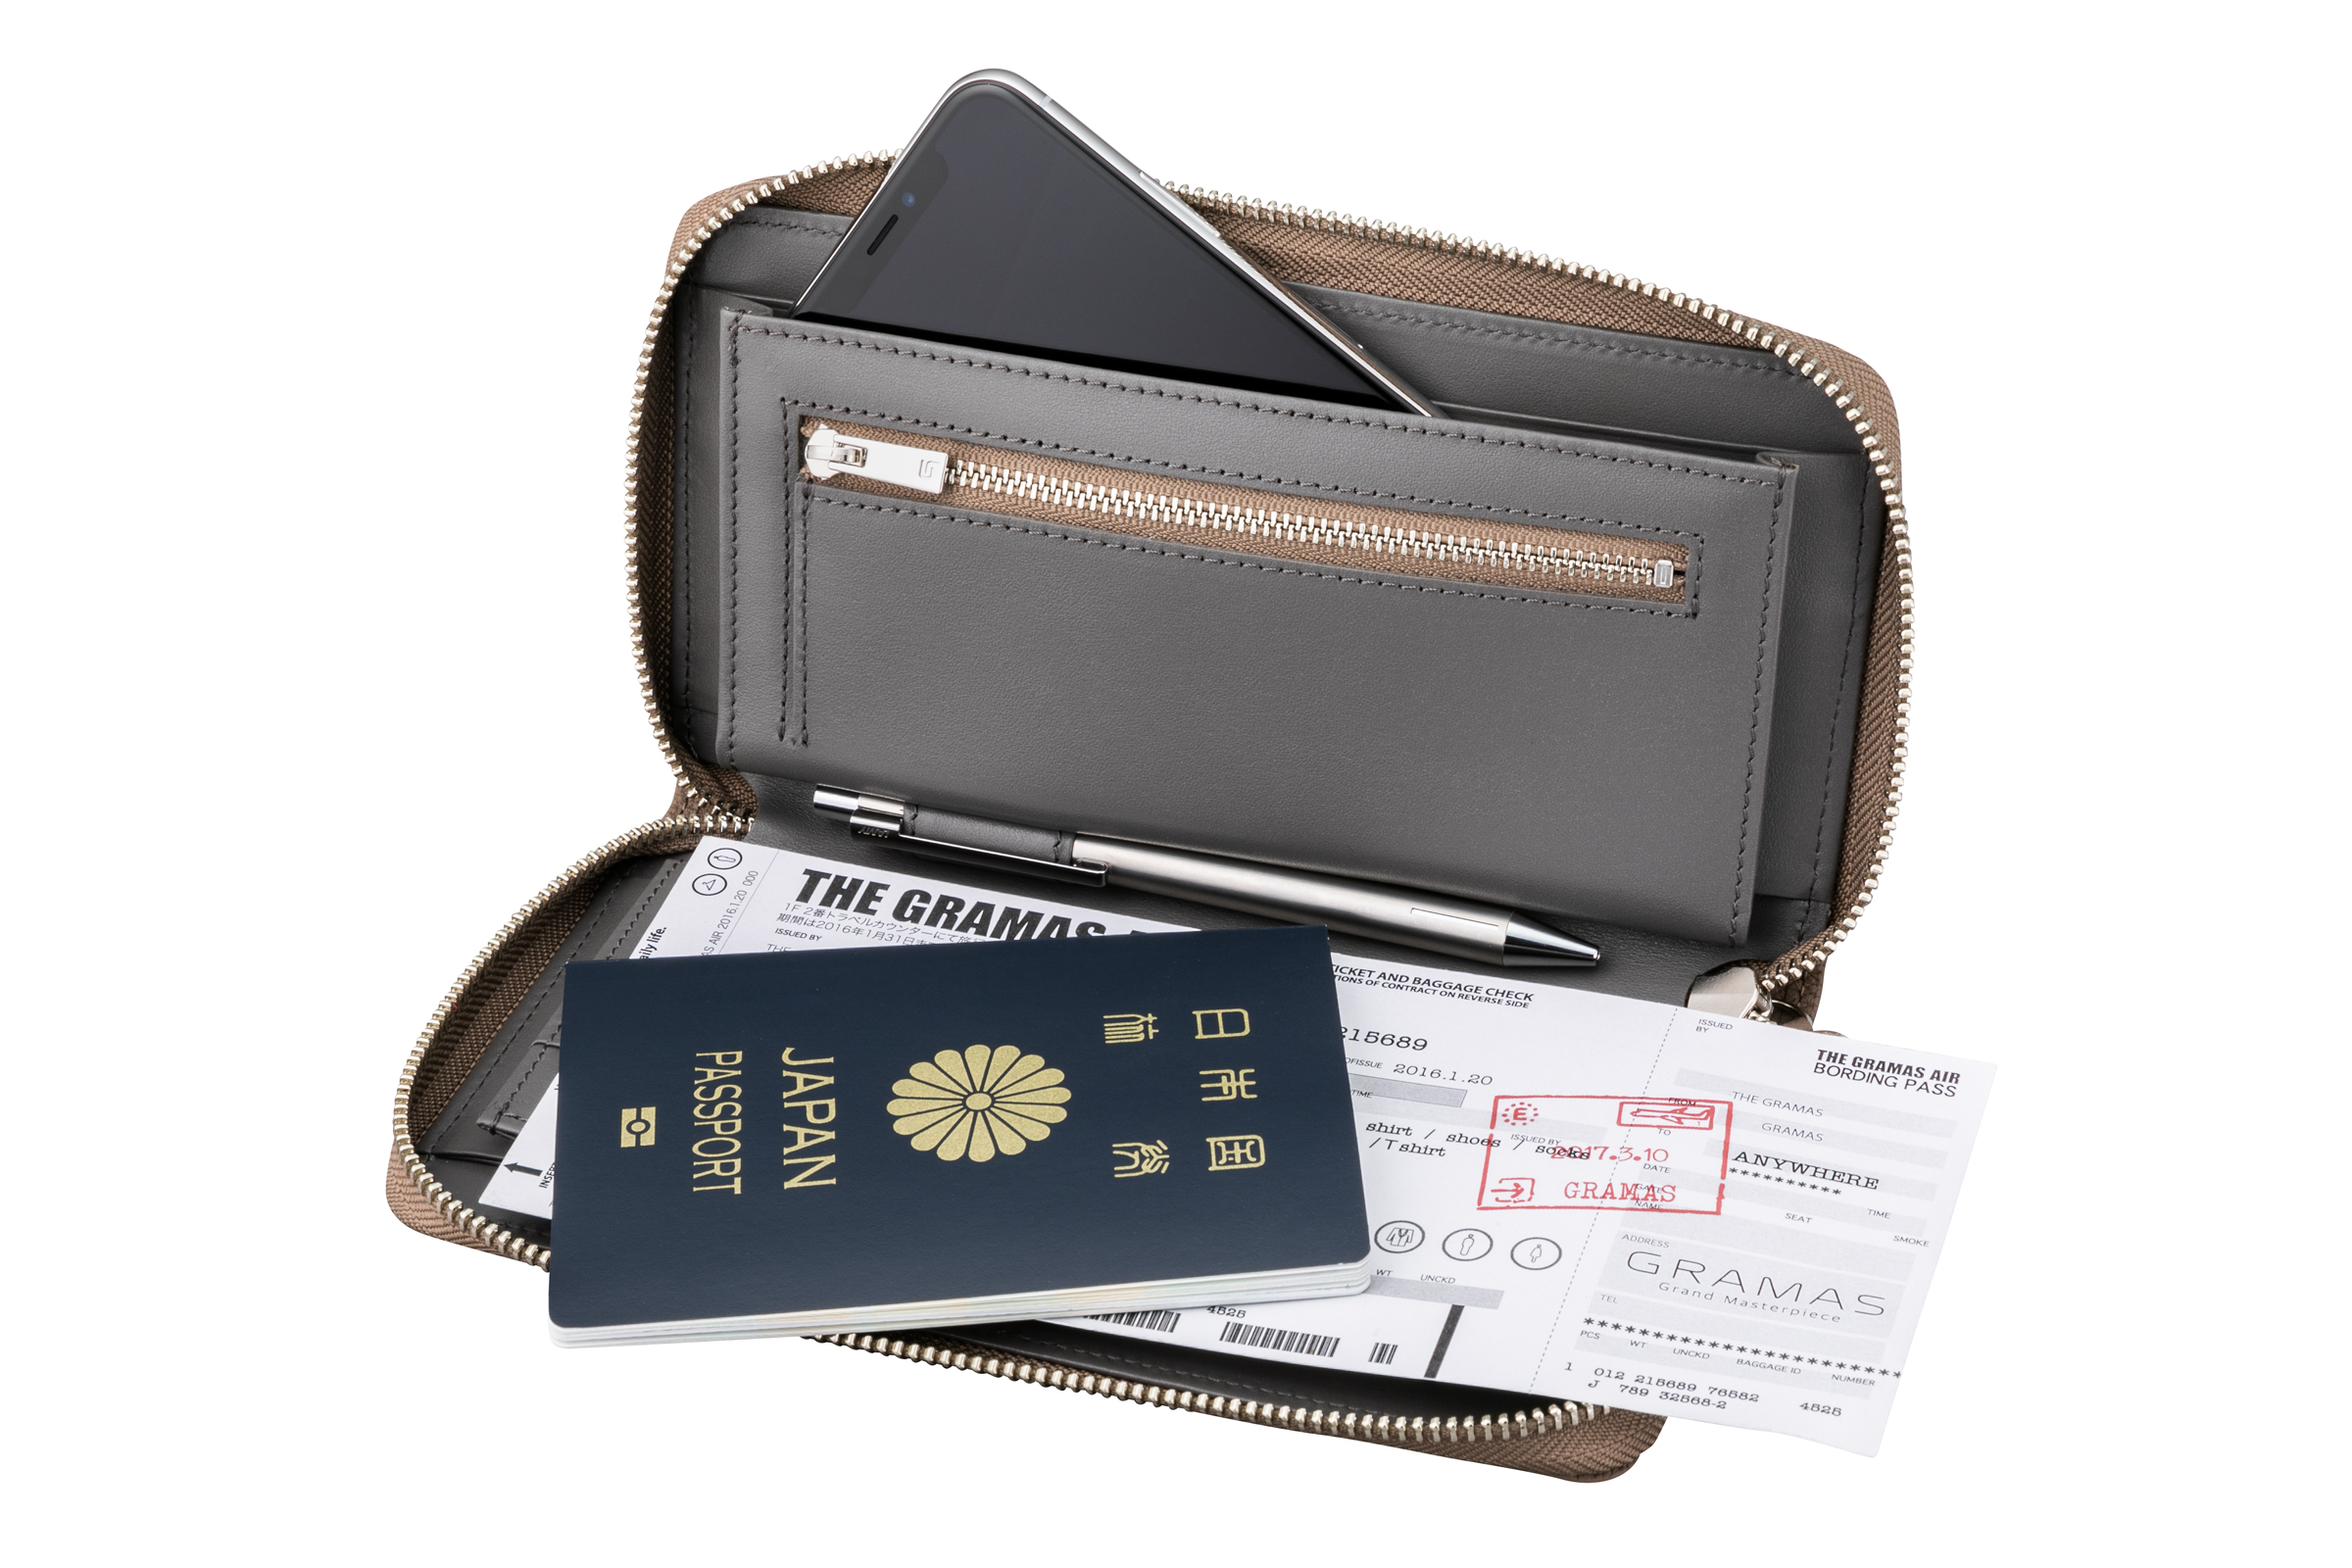 海外への出張や旅行時、パスポートやペンなど必要な物をコンパクトに